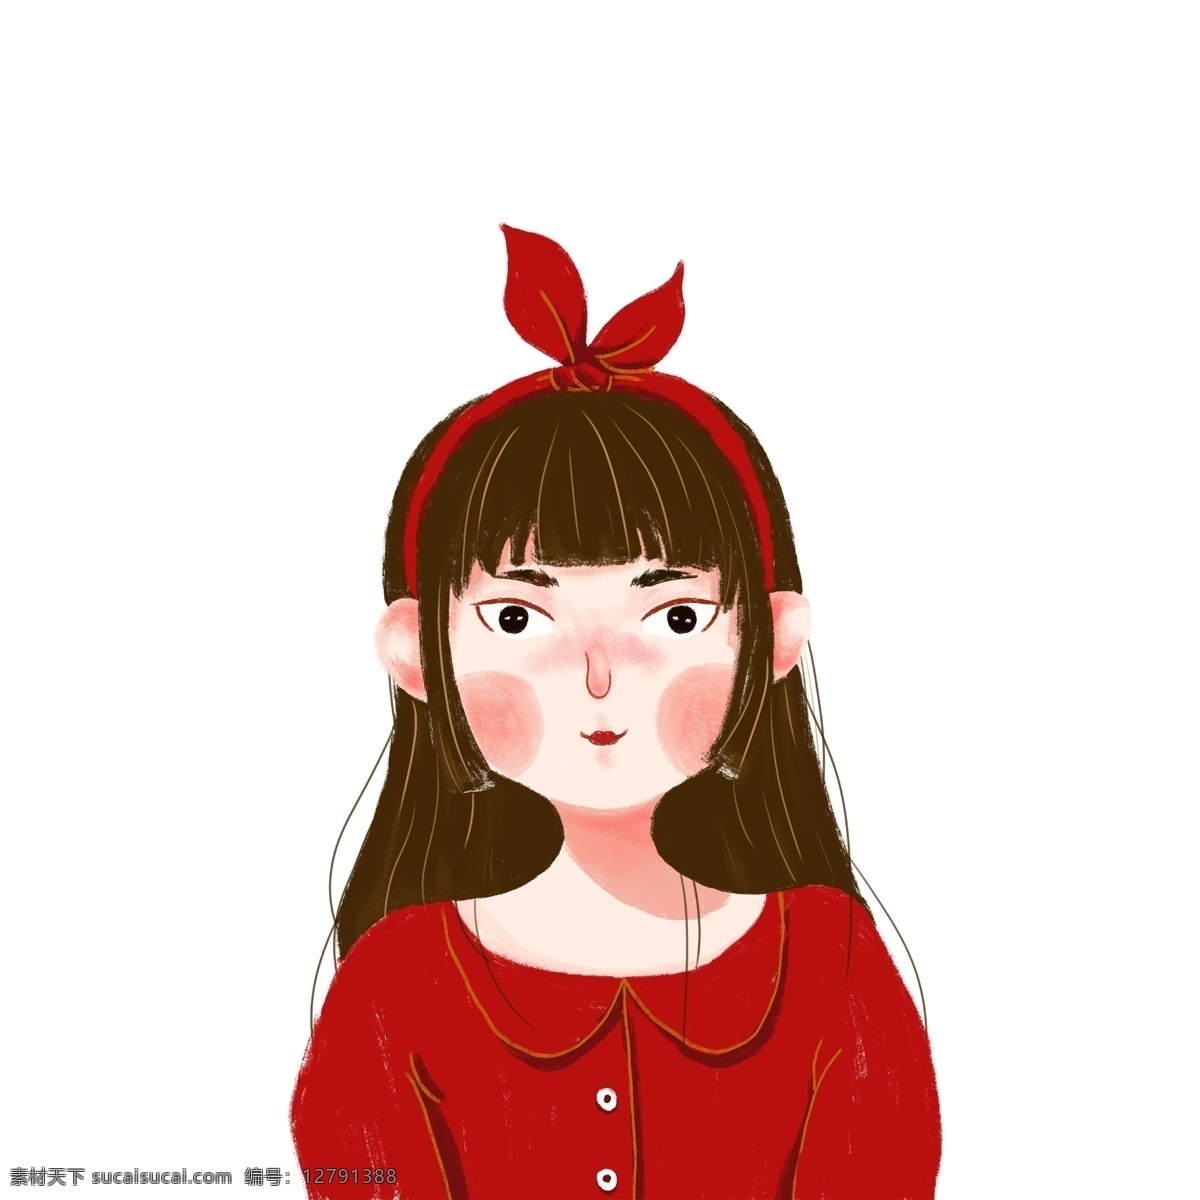 红衣 服 女孩 插画 红衣服女孩 卡通插画 人物插画 小人插画 创意插画 女孩插画 红色的蝴蝶结